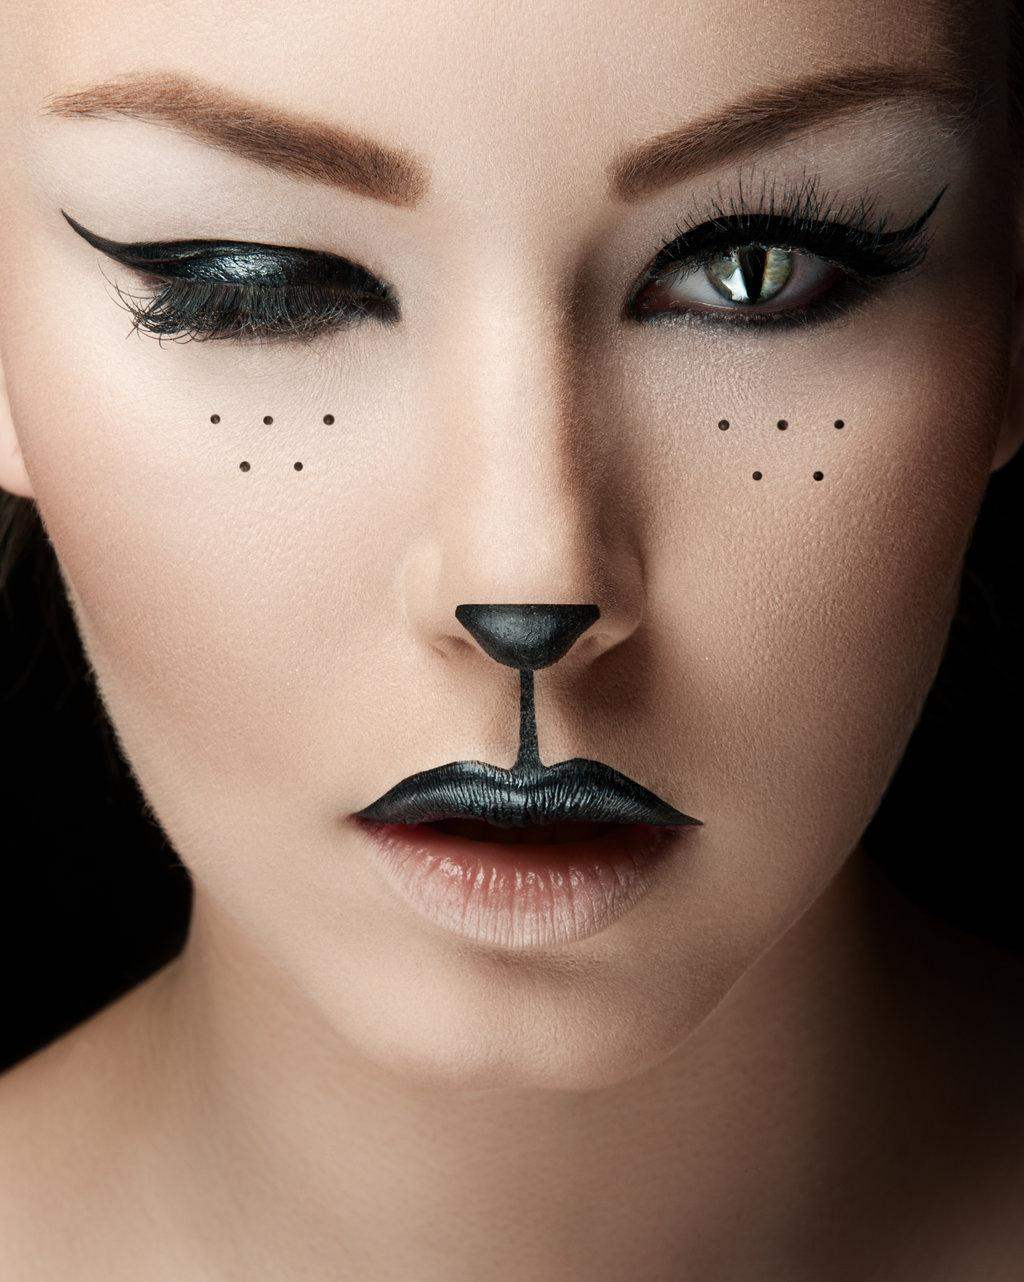 Eye Makeup For Halloween Halloween 2017 Eye Makeup Ideas Halloween Face Mask Ideas